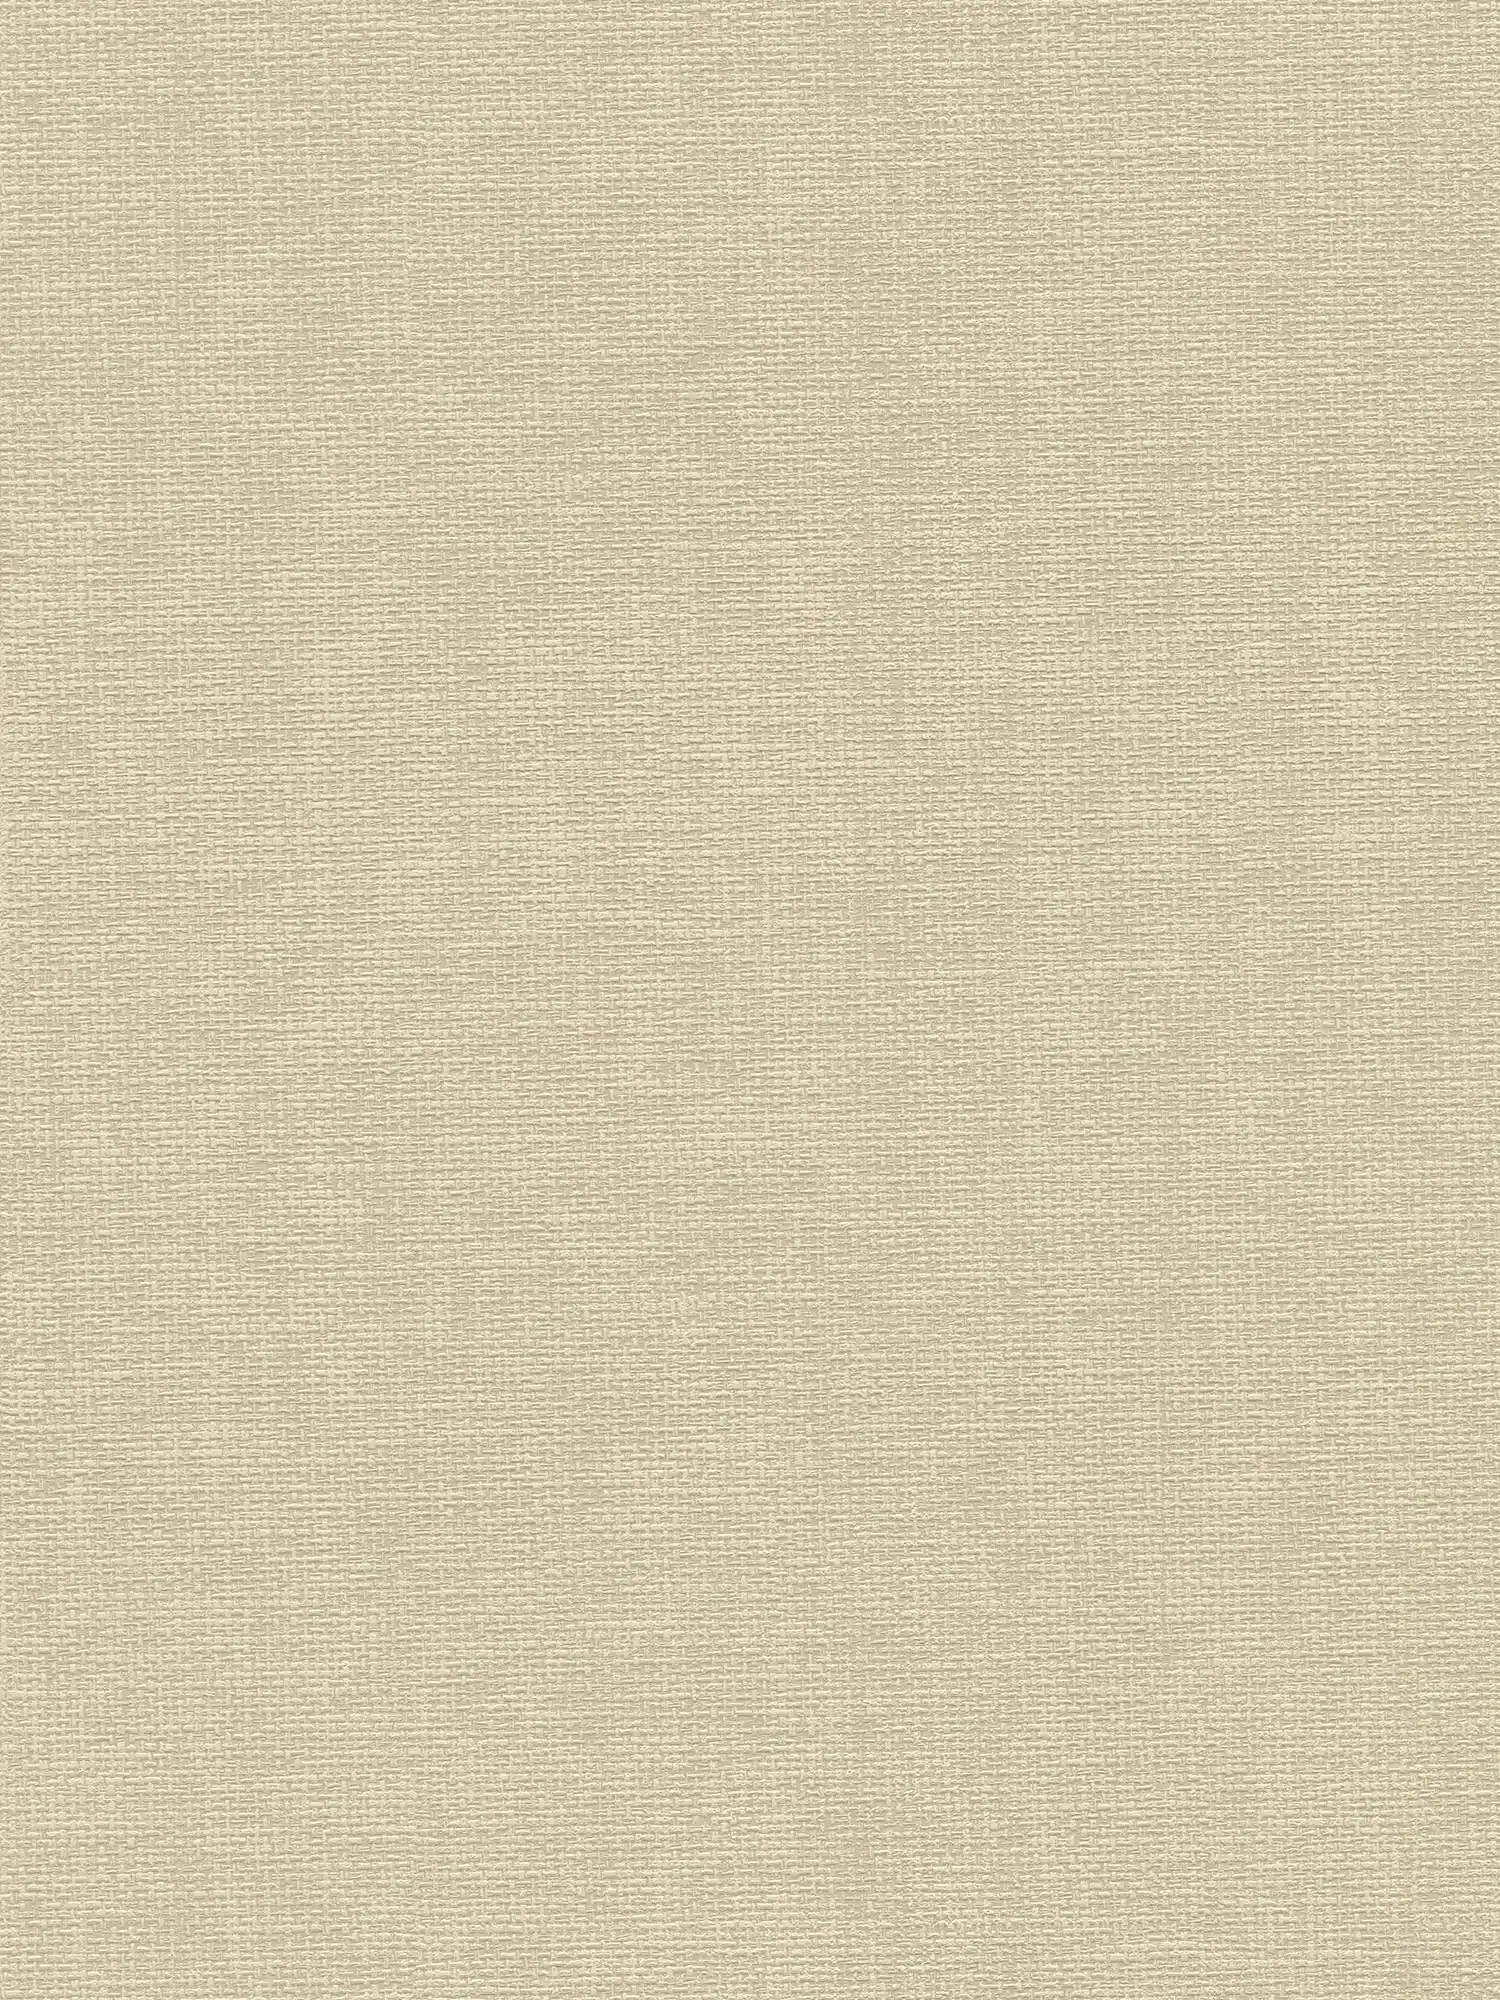 Papier peint design textile avec structure tissée - beige, gris
